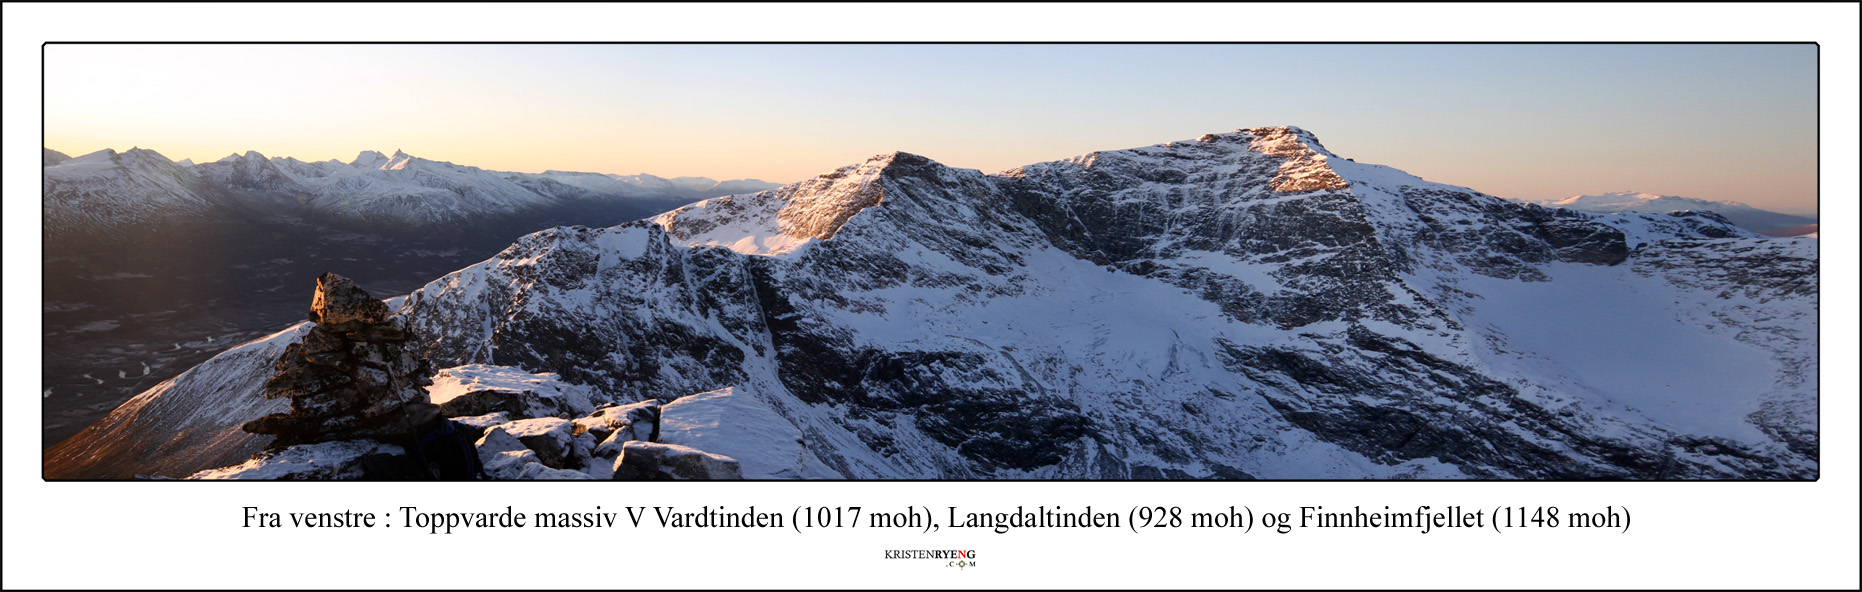 Panorama-MassivVVardtindenLangdaltindenFinnheimfjellet.jpg - Varden er høyde 1017 i fjellmassivet vest for Vardtinden ved Breivikeidet. Videre mot sør ses Langdaltinden og Finnheimfjellet.